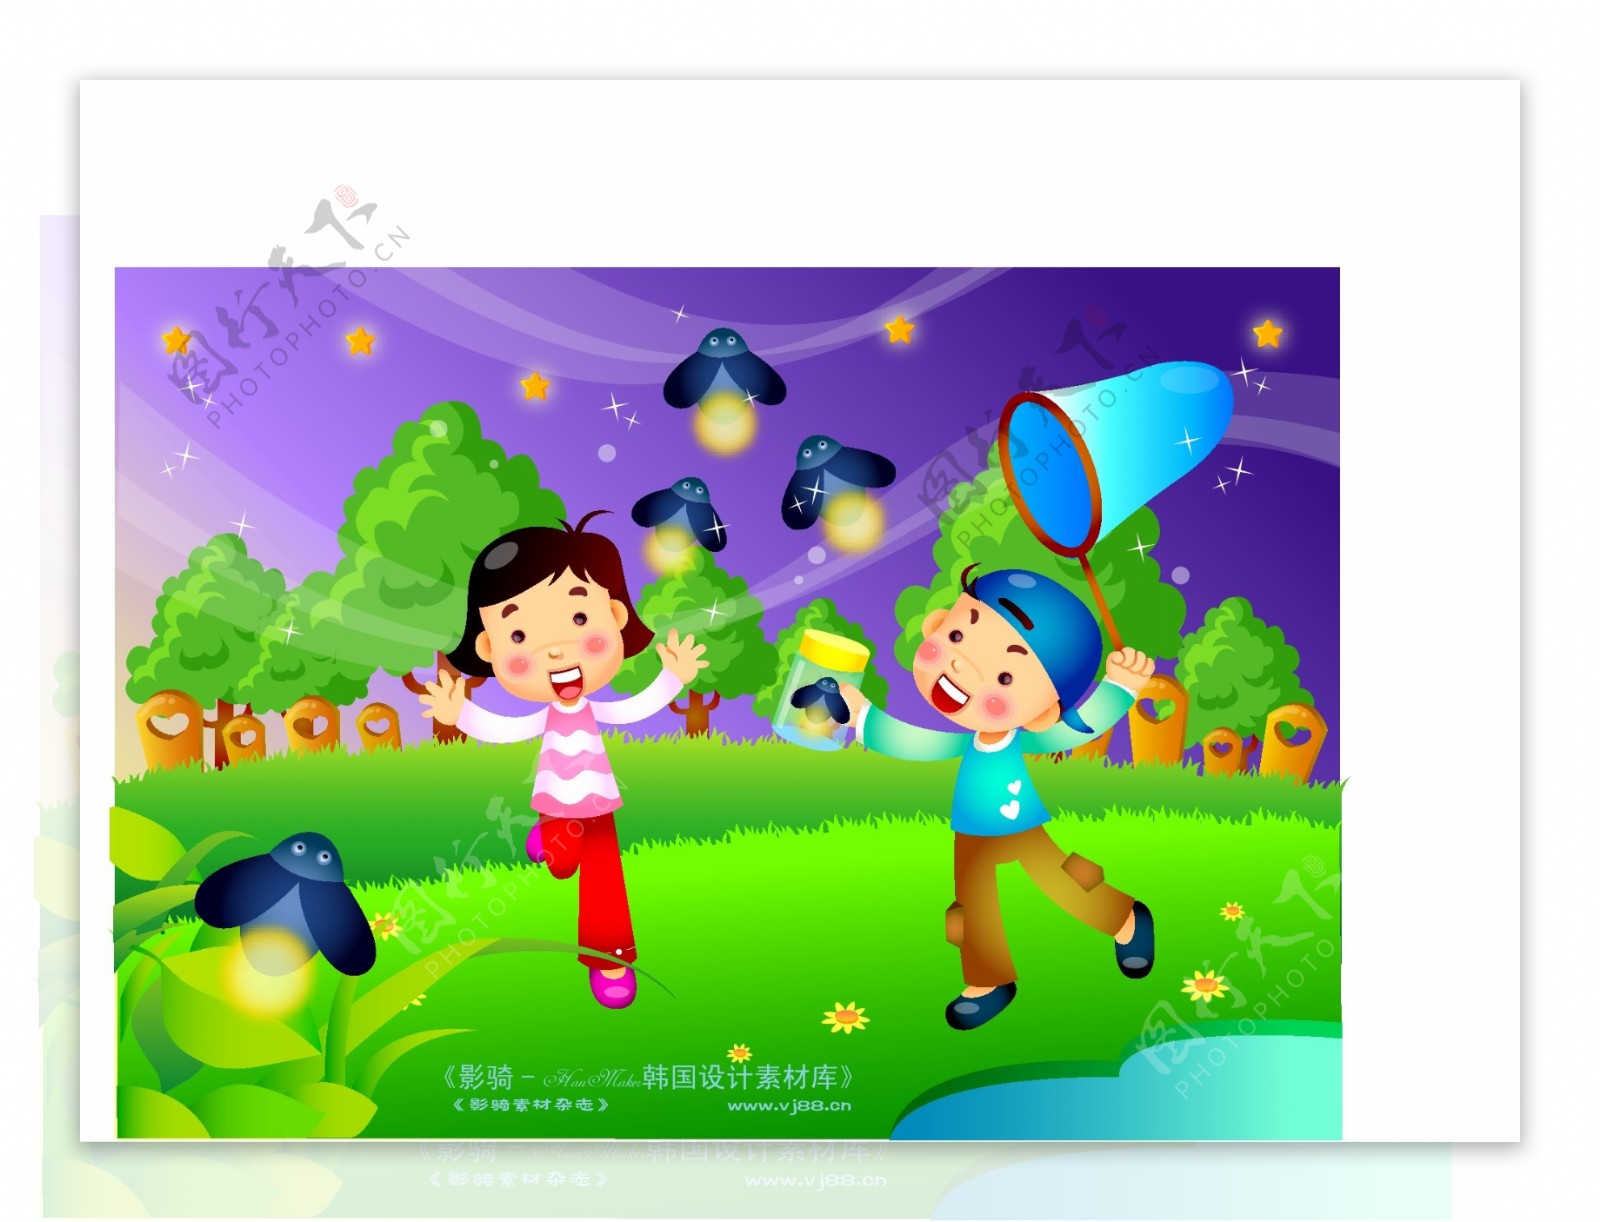 快乐儿童生活矢量素材矢量图片HanMaker韩国设计素材库